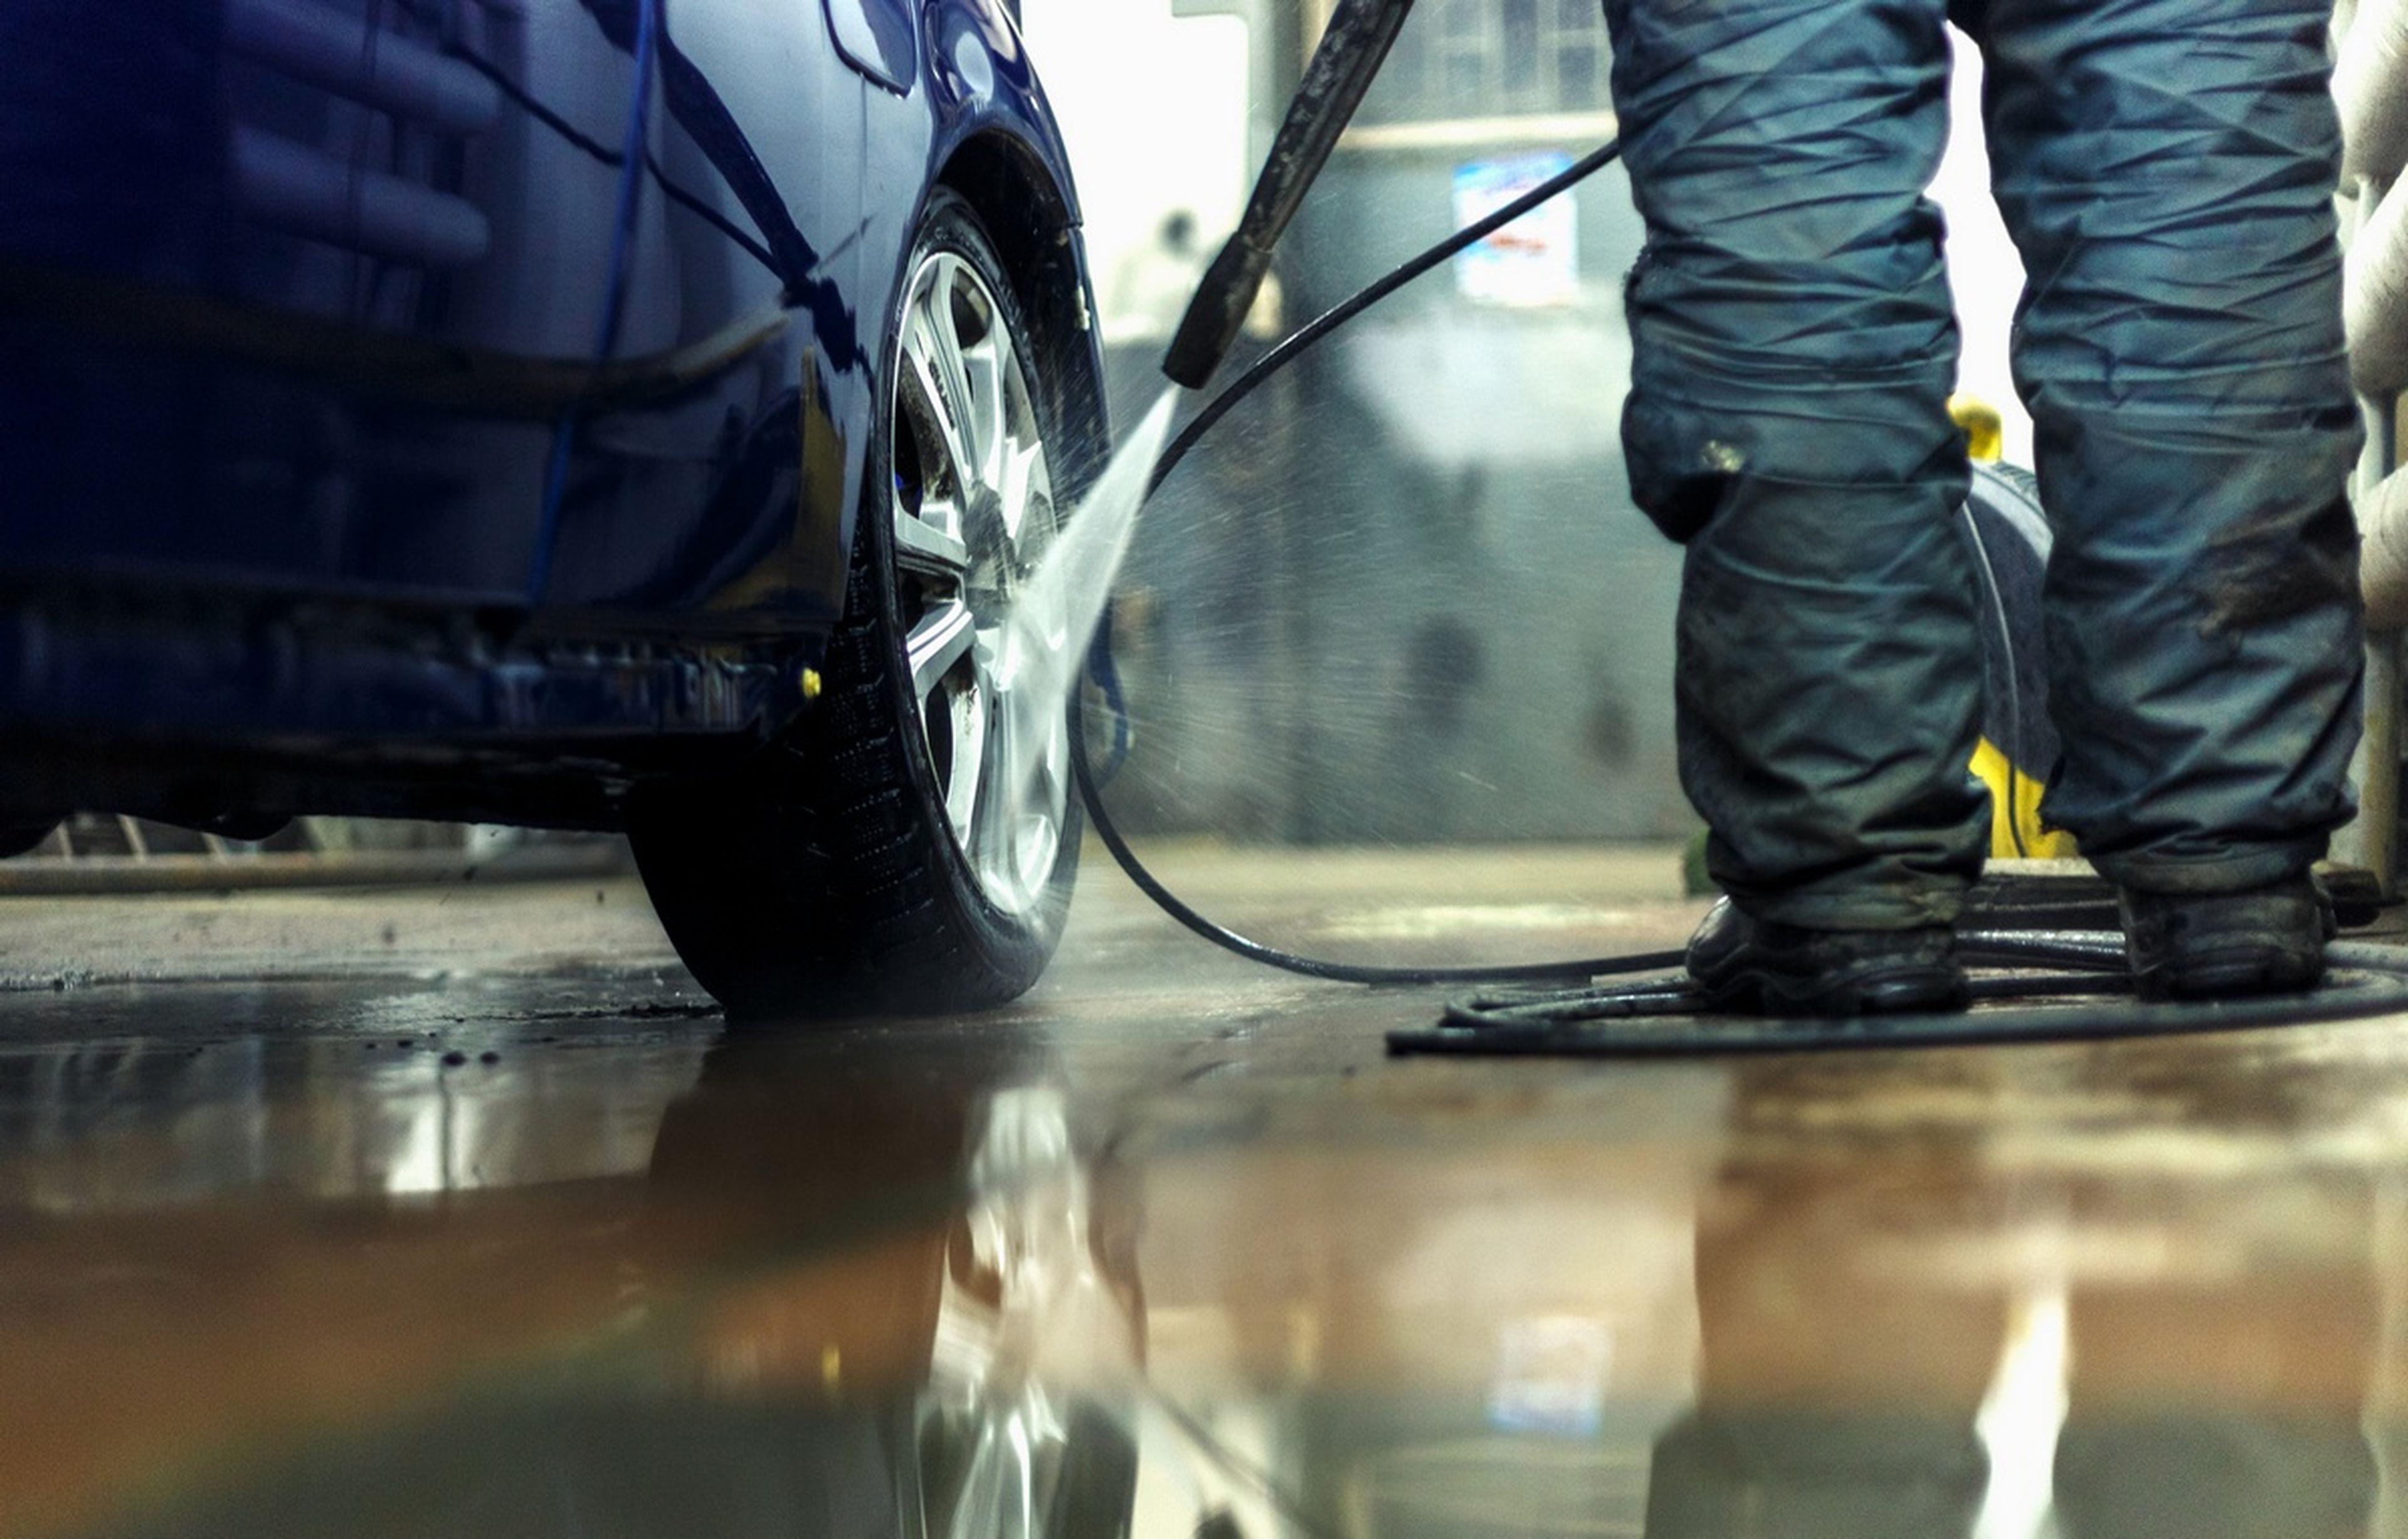 Agua a presión o túnel de lavado, ¿qué es mejor para cuidar tu coche?